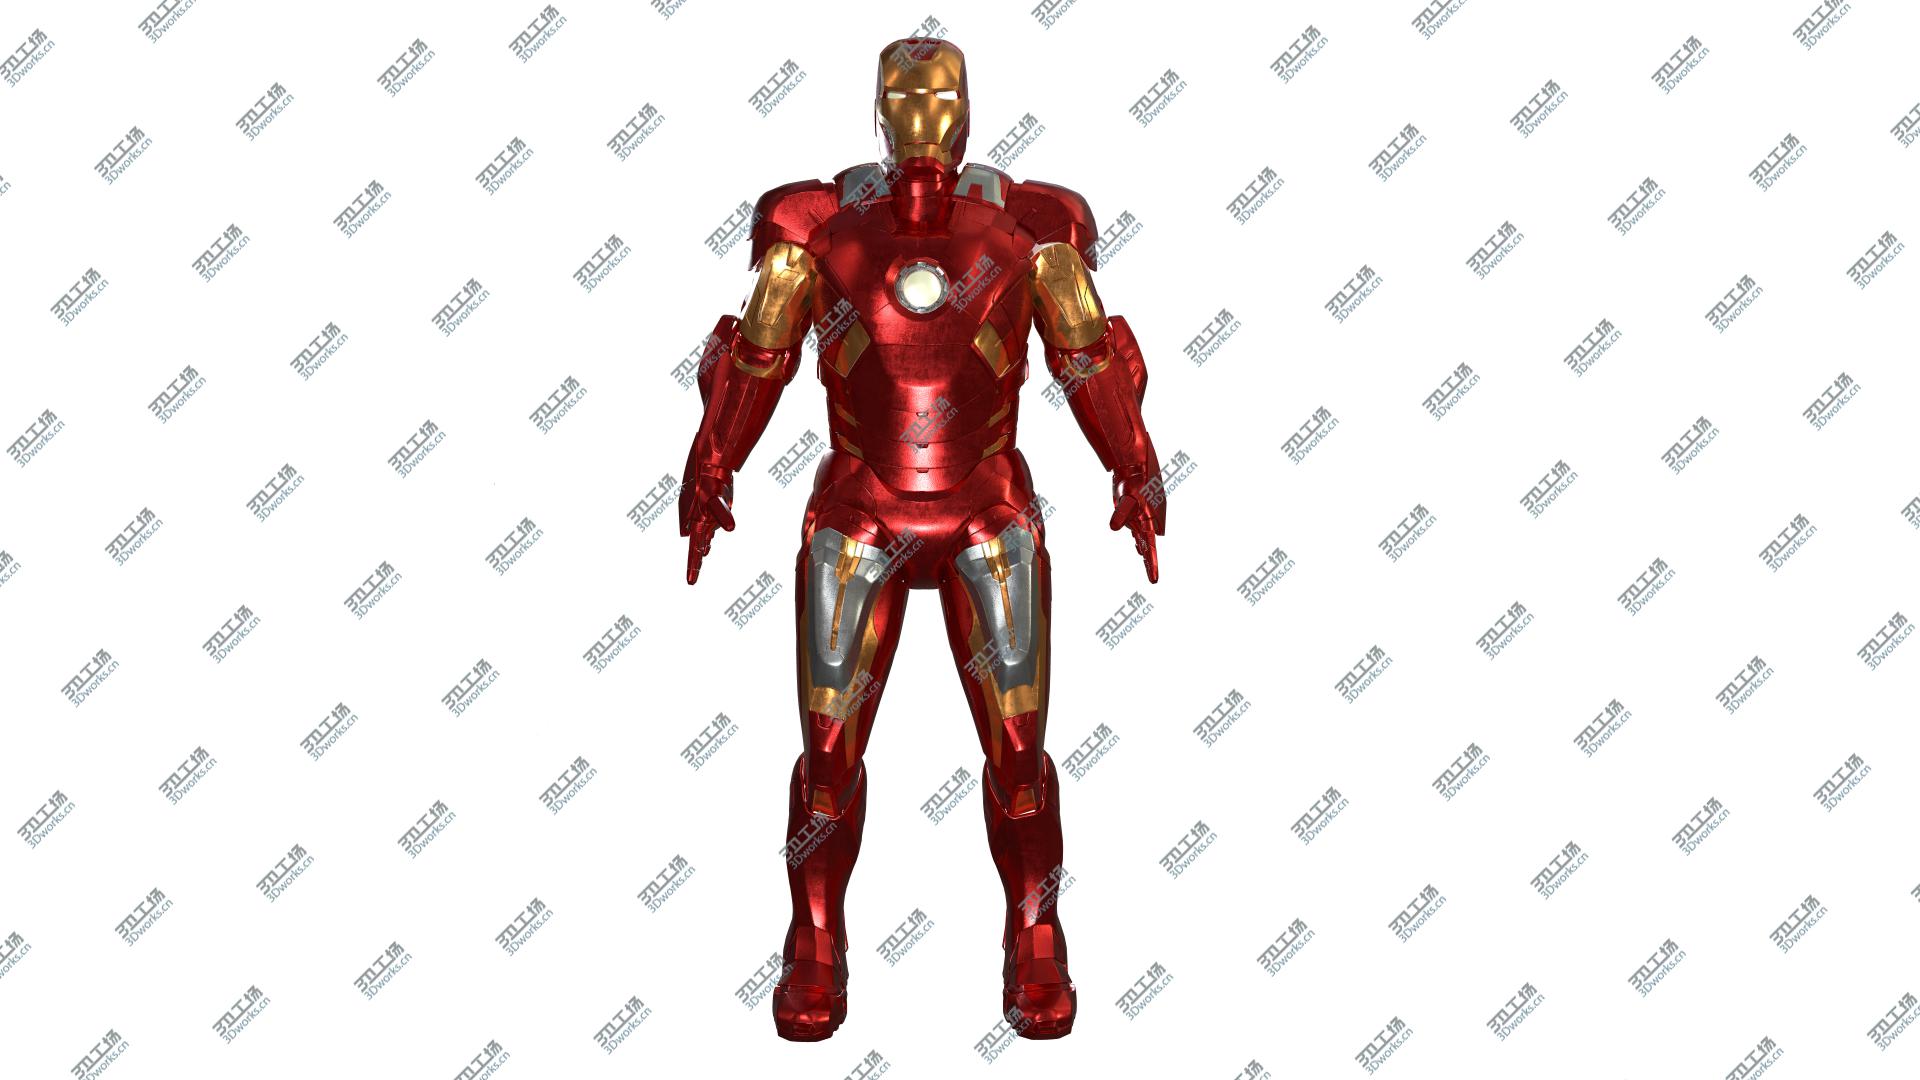 images/goods_img/202104093/3D Iron Man Mark VII model/4.jpg